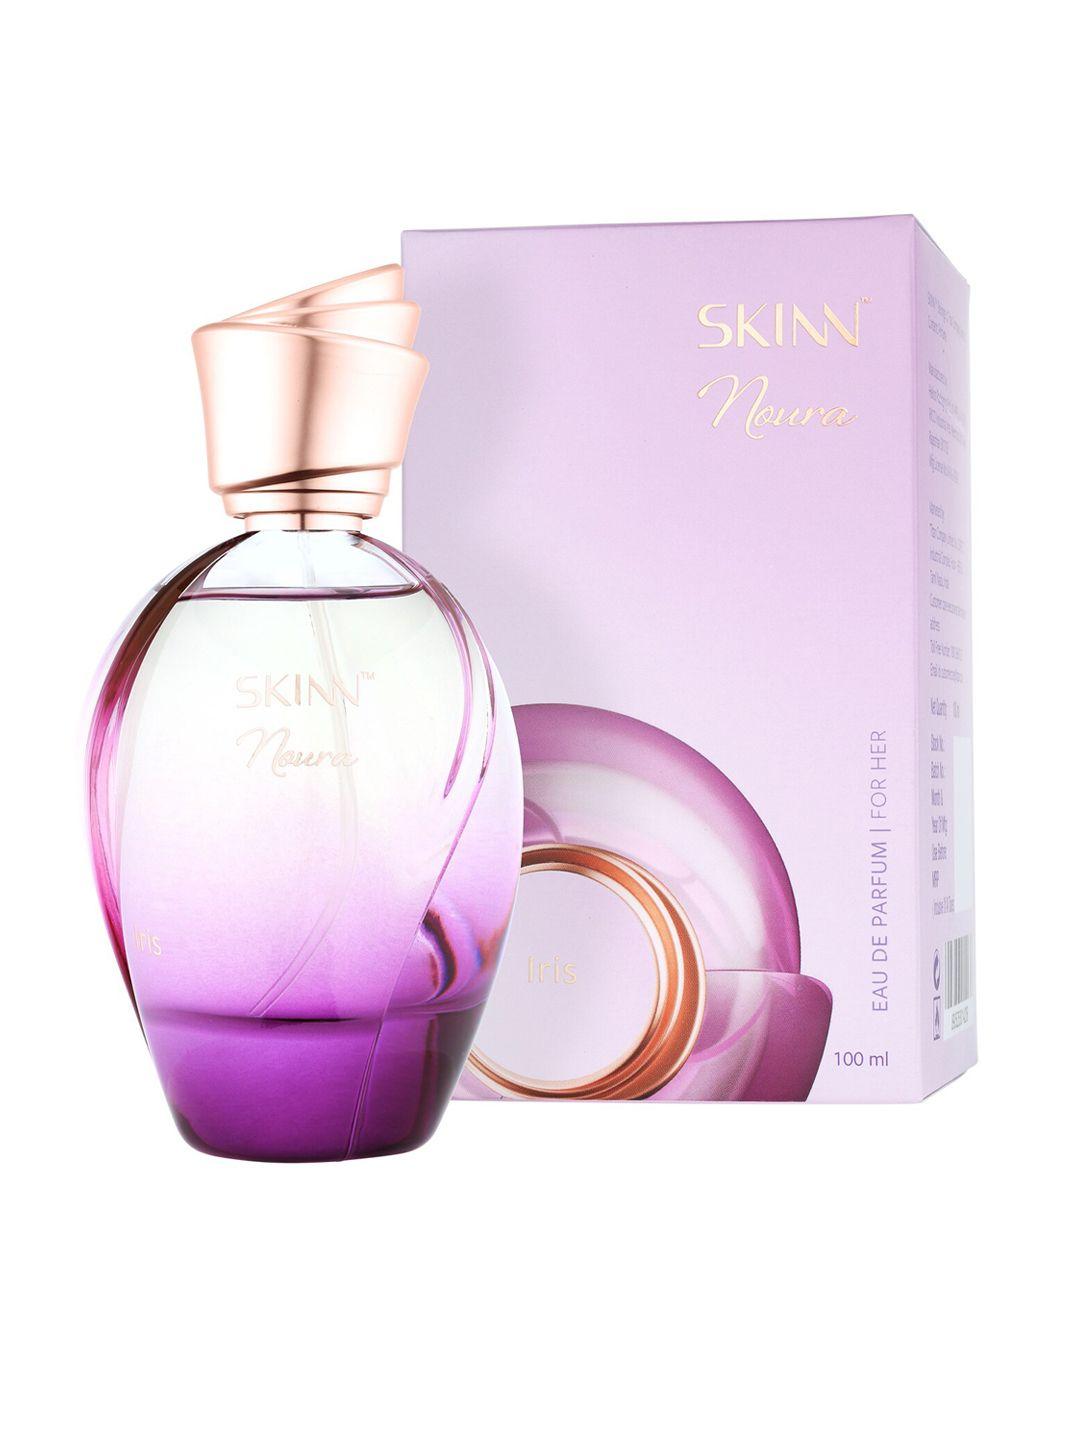 skinn--women-noura-iris-eau-de-parfum-100ml